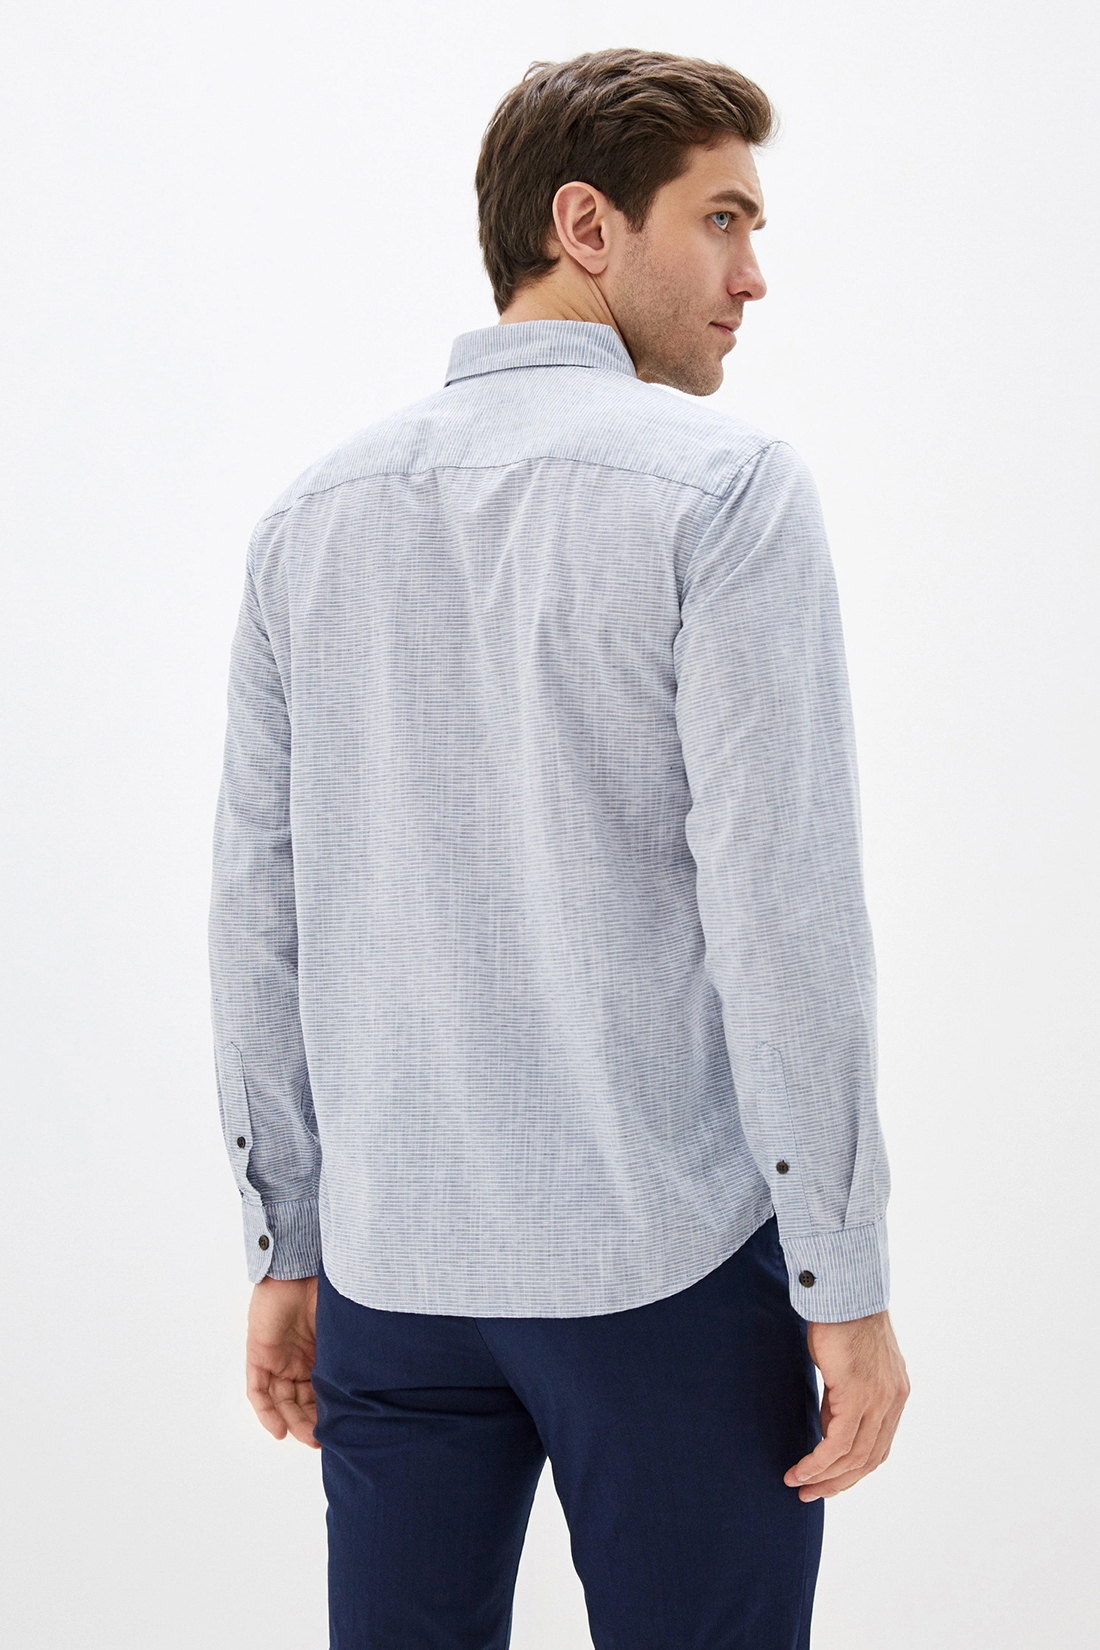 Рубашка с узором из полос (арт. baon B660014), размер 3XL, цвет голубой Рубашка с узором из полос (арт. baon B660014) - фото 2